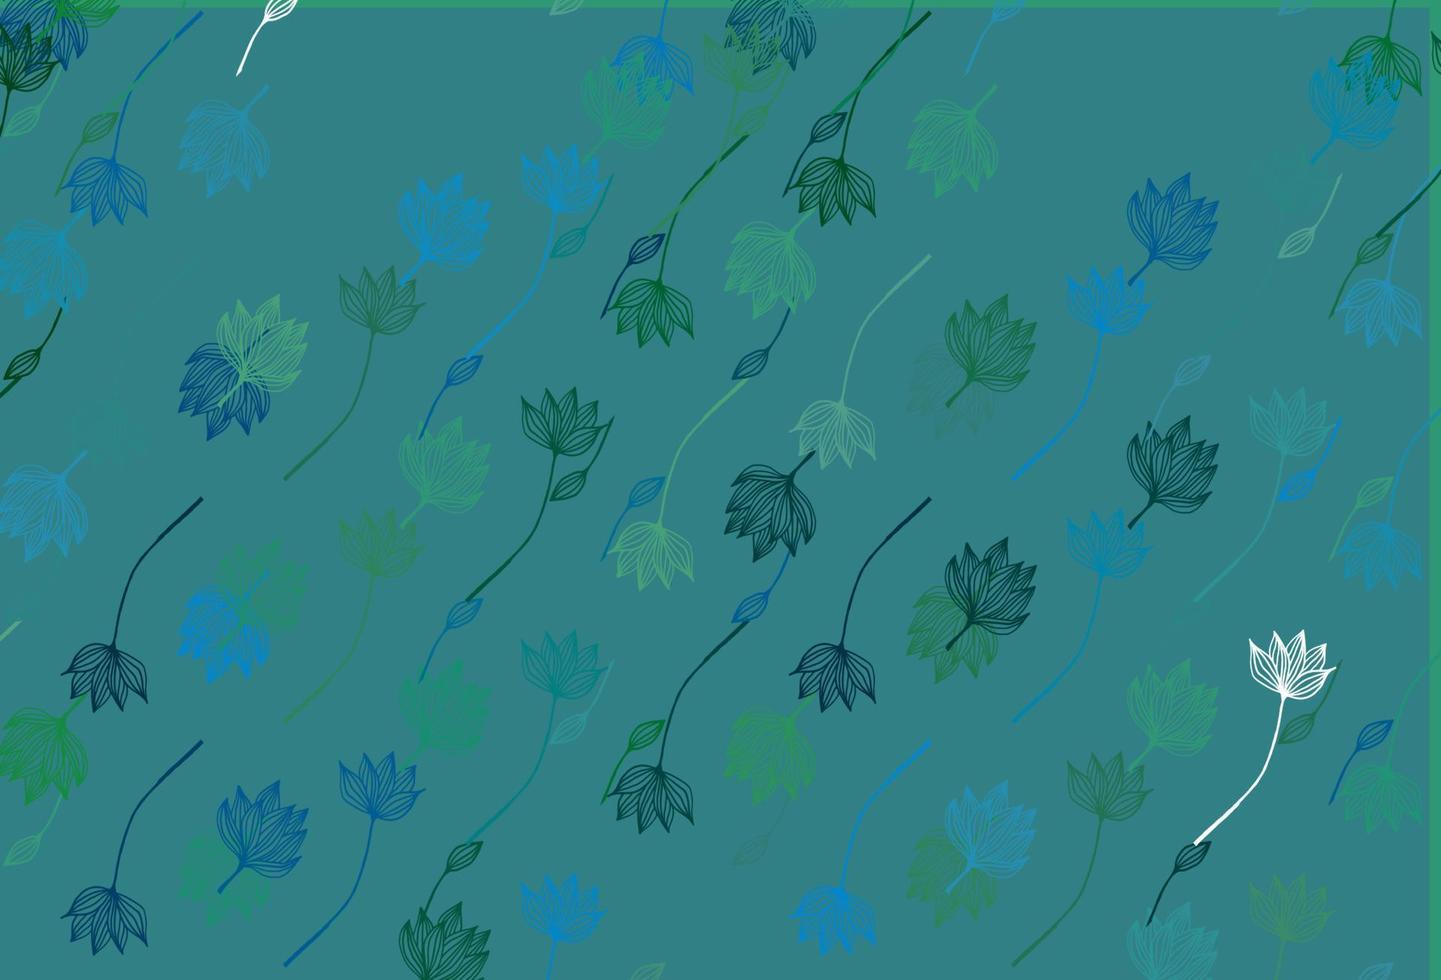 padrão de doodle de vetor azul e verde claro.